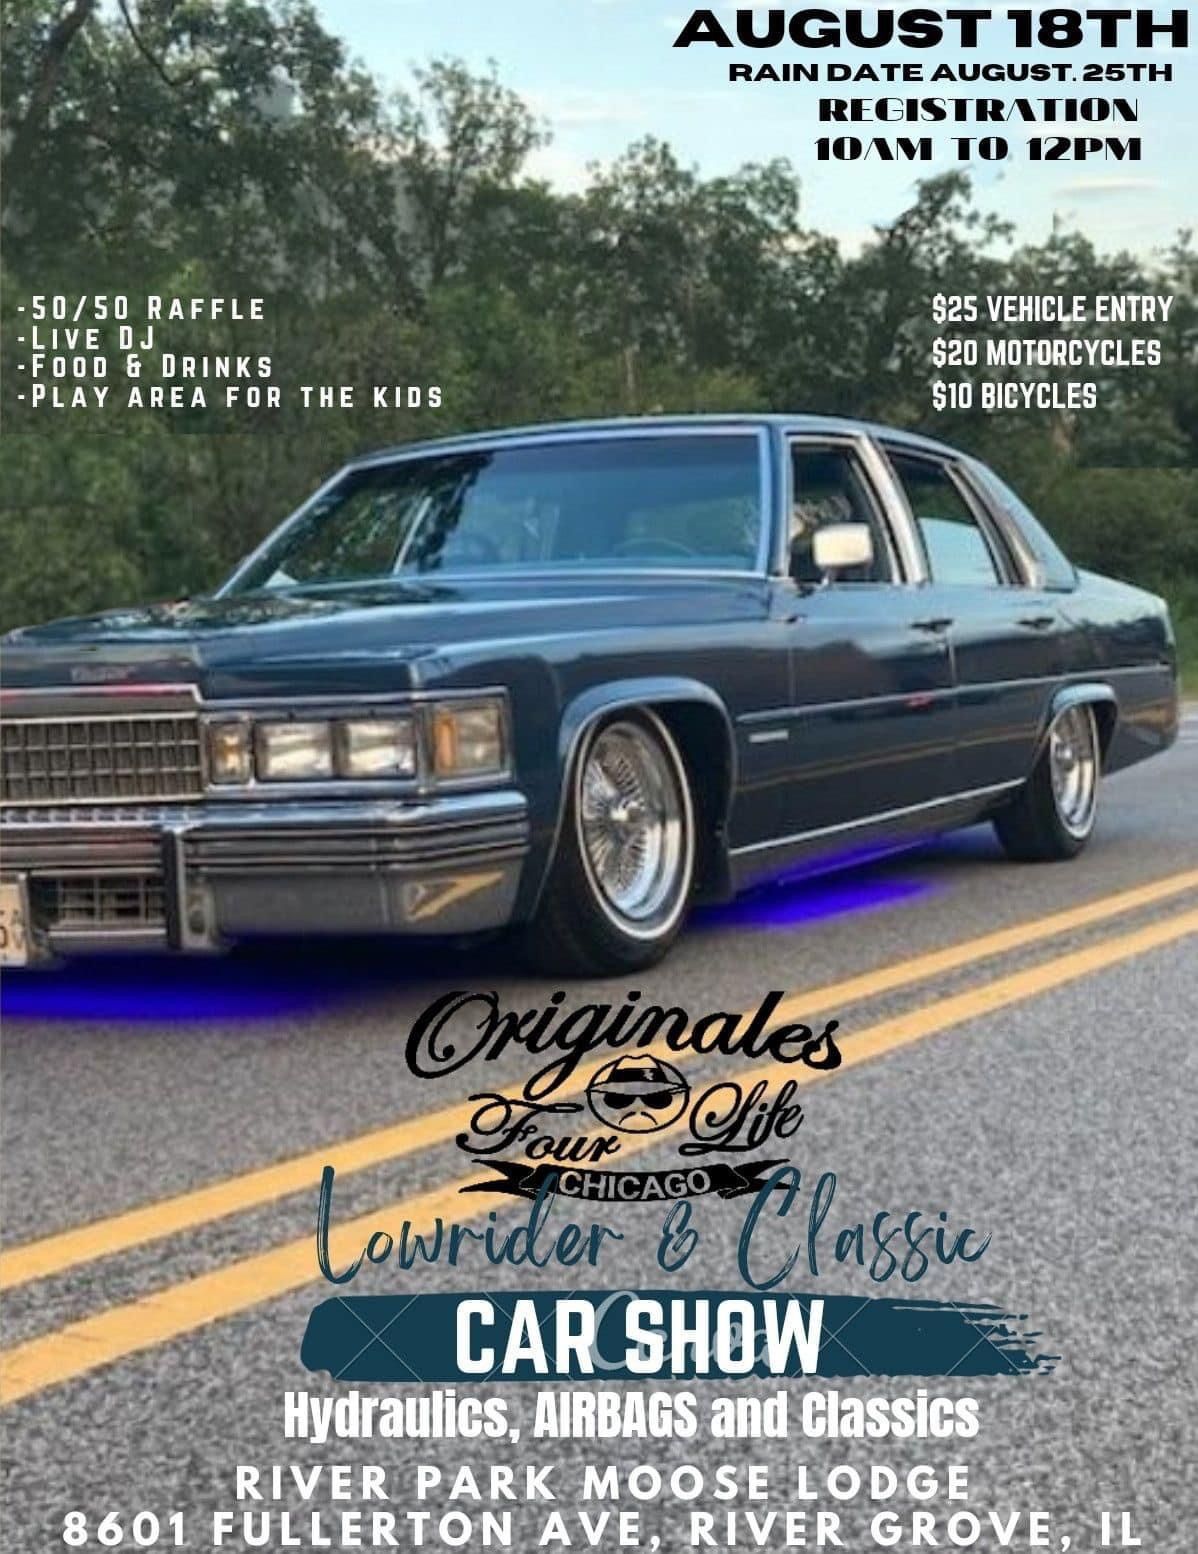 Originates 4 Life Lowrider & Classic Car Show 